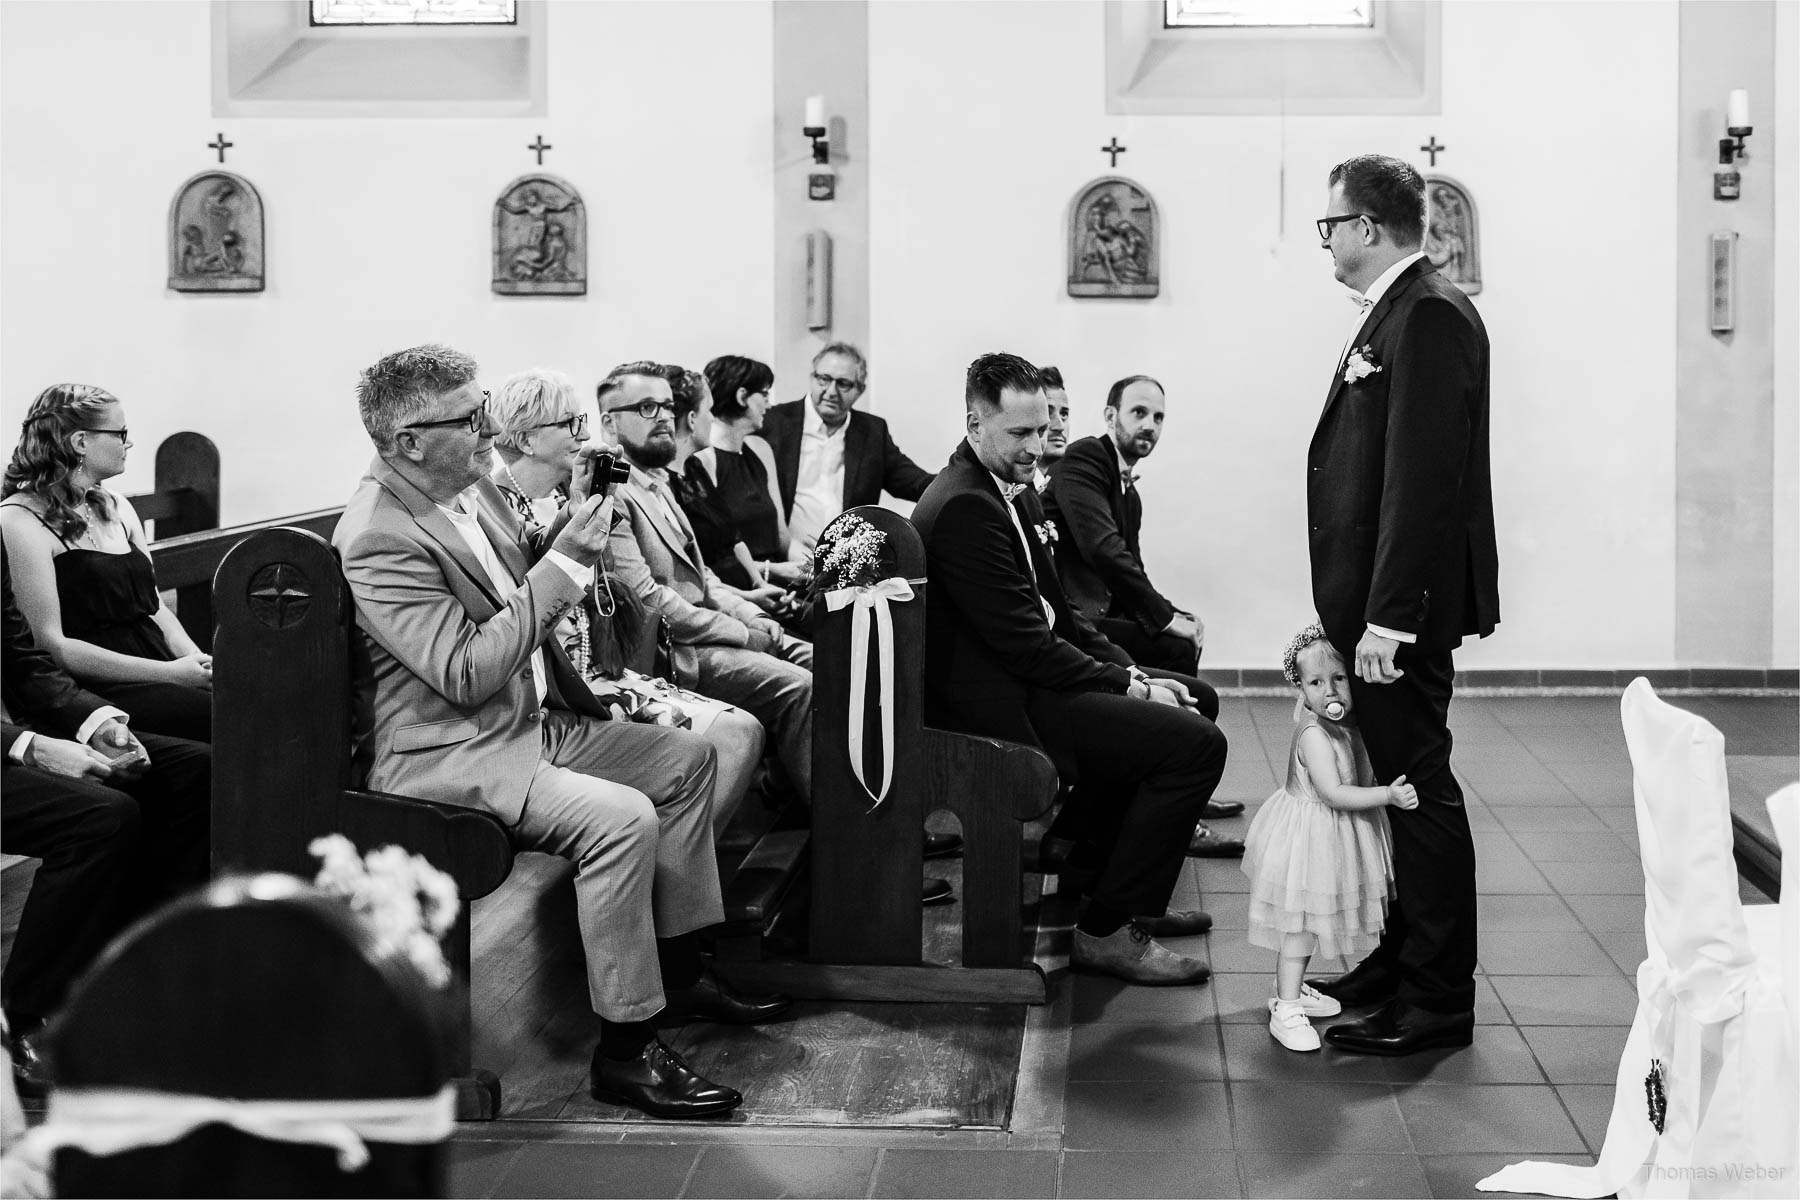 Kirchliche Hochzeit und Hochzeitsfeier, Hochzeitsfotograf Ostfriesland, Thomas Weber